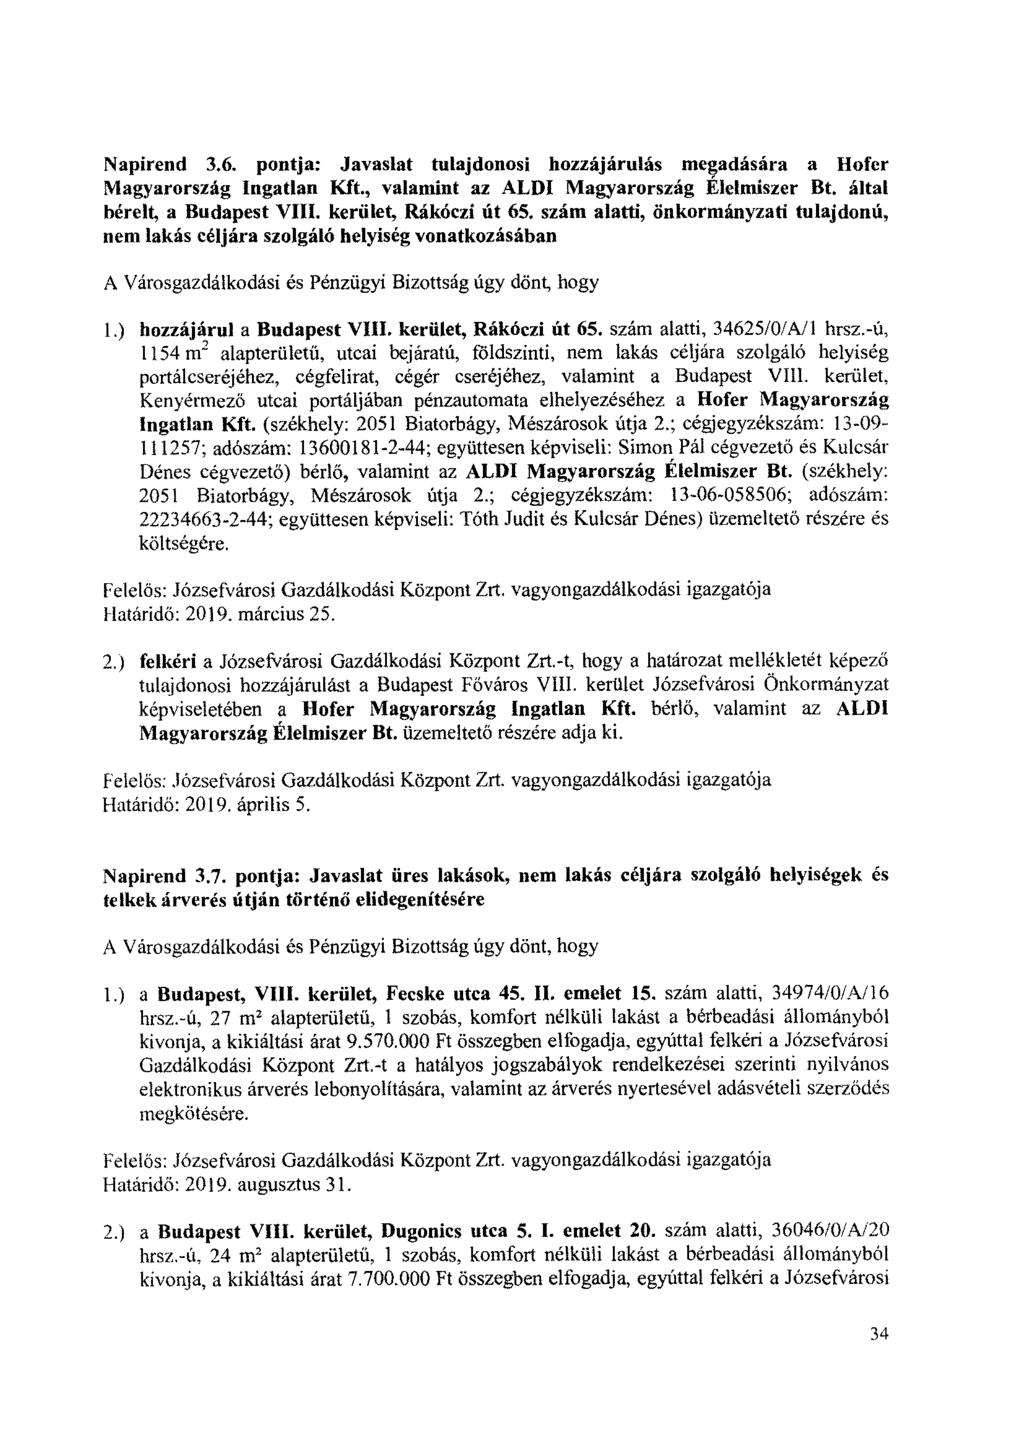 Napirend 3.6. pontja: Javaslat tulajdonosi hozzájárulás megadására a Hofer Magyarország Ingatlan Kft., valamint az ALDI Magyarország Élelmiszer Bt. által bereft, a Budapest VIII.